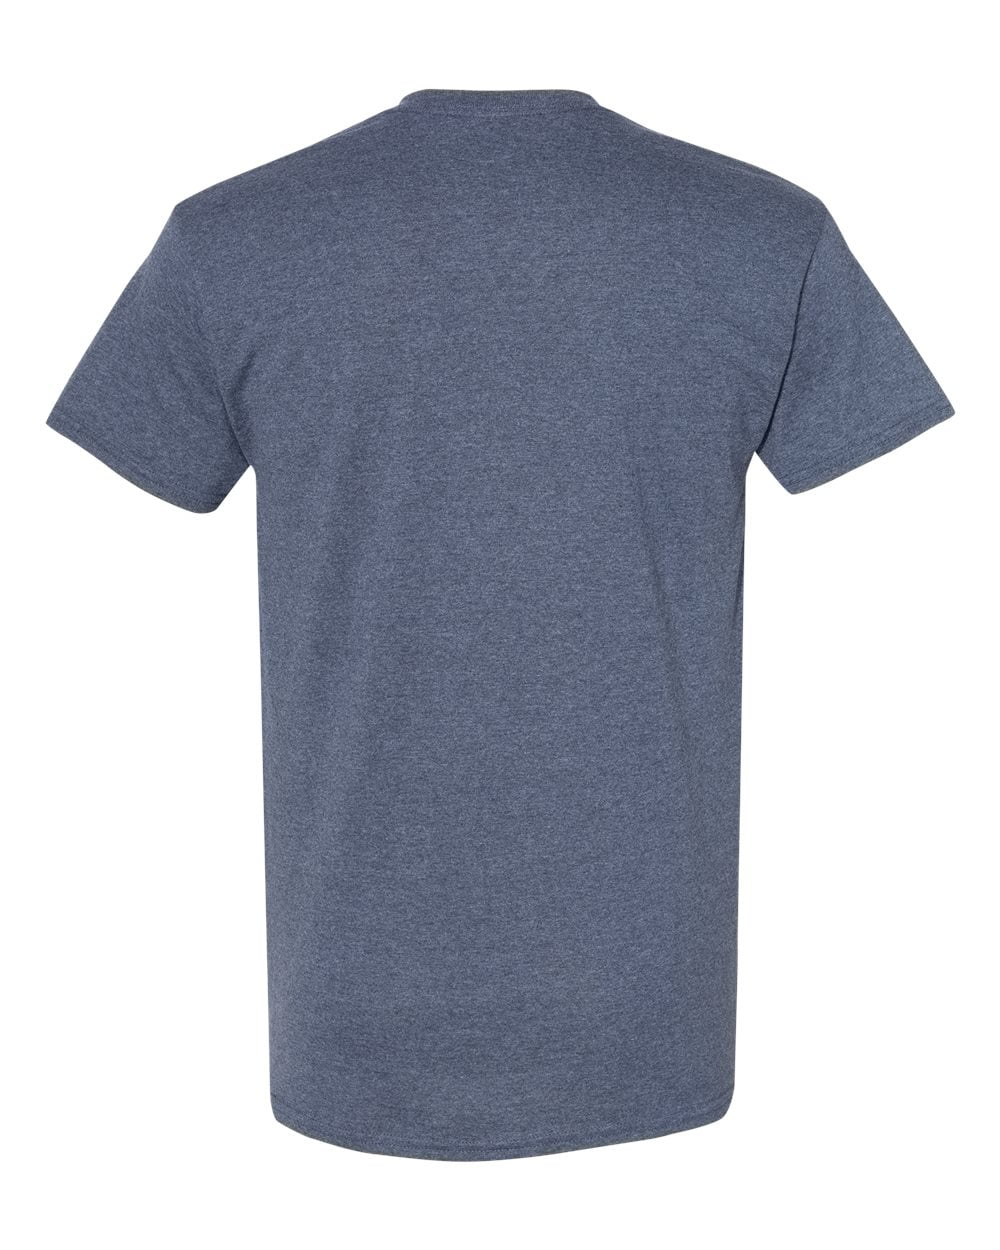 Men Heavy Cotton Multi Colors T-Shirt Color Heather Navy 4X-Large Size